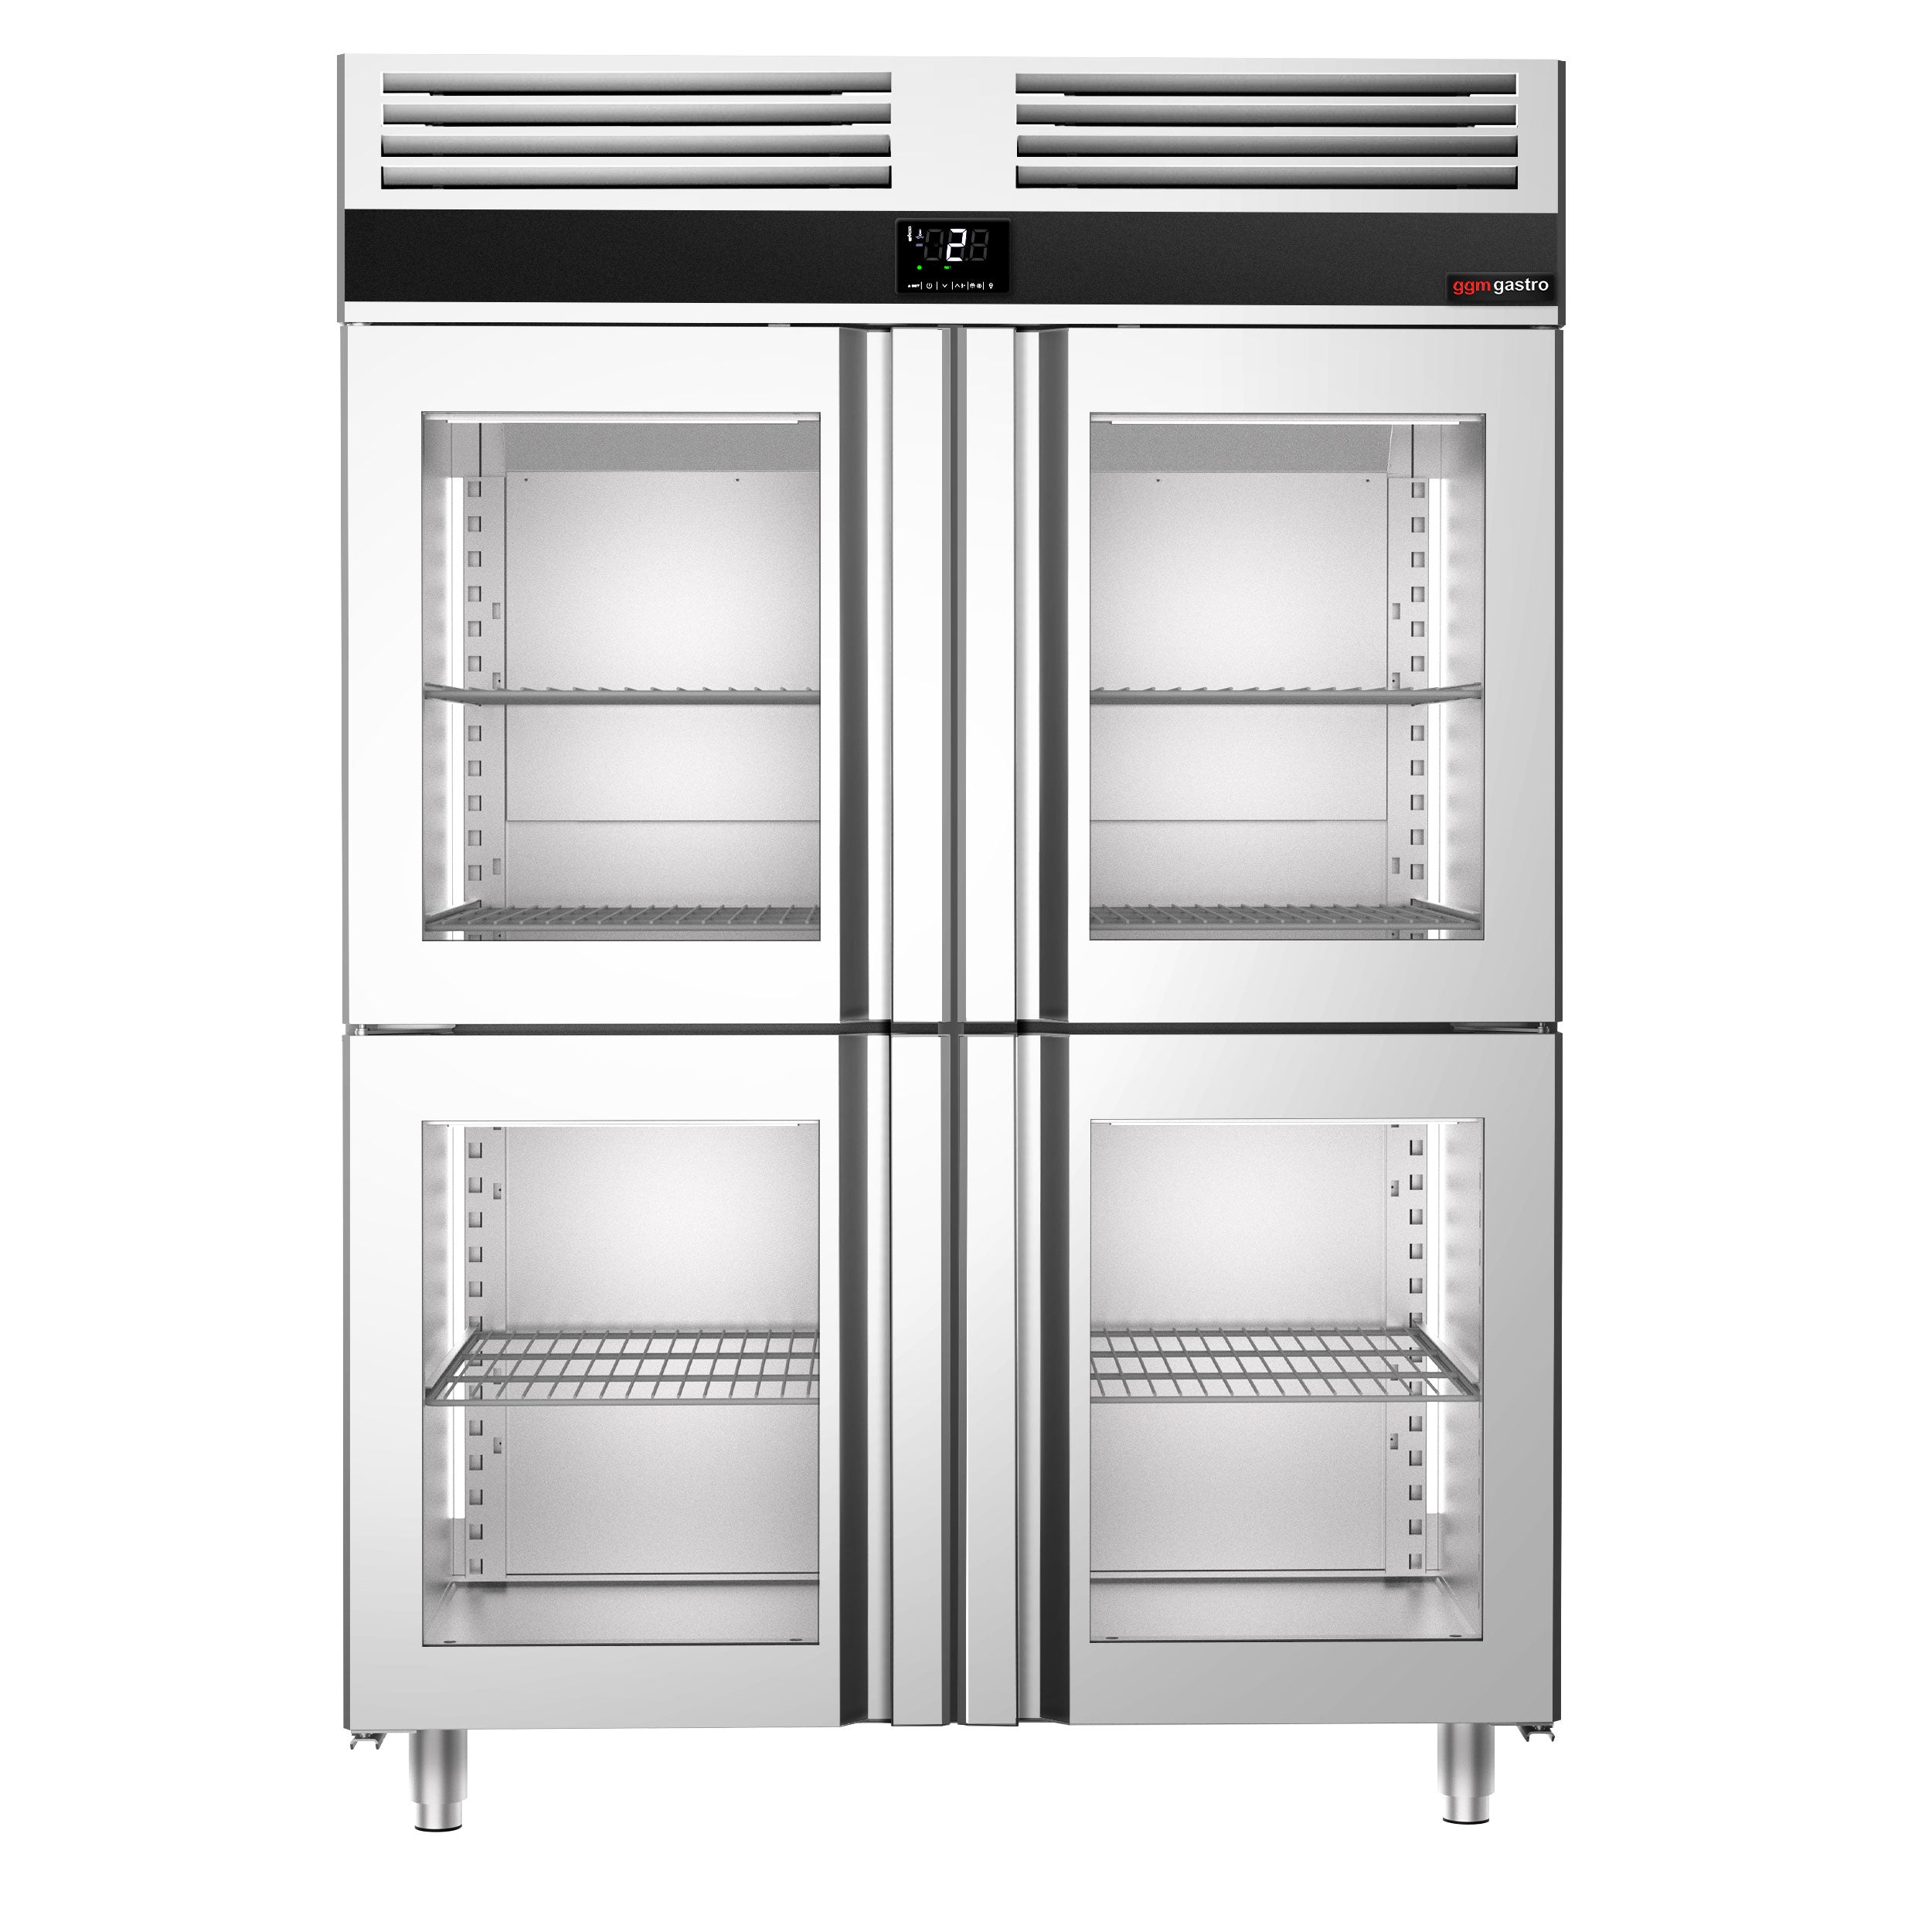 Køleskab - 1,4 x 0,81 m - med 4 halve glasdøre